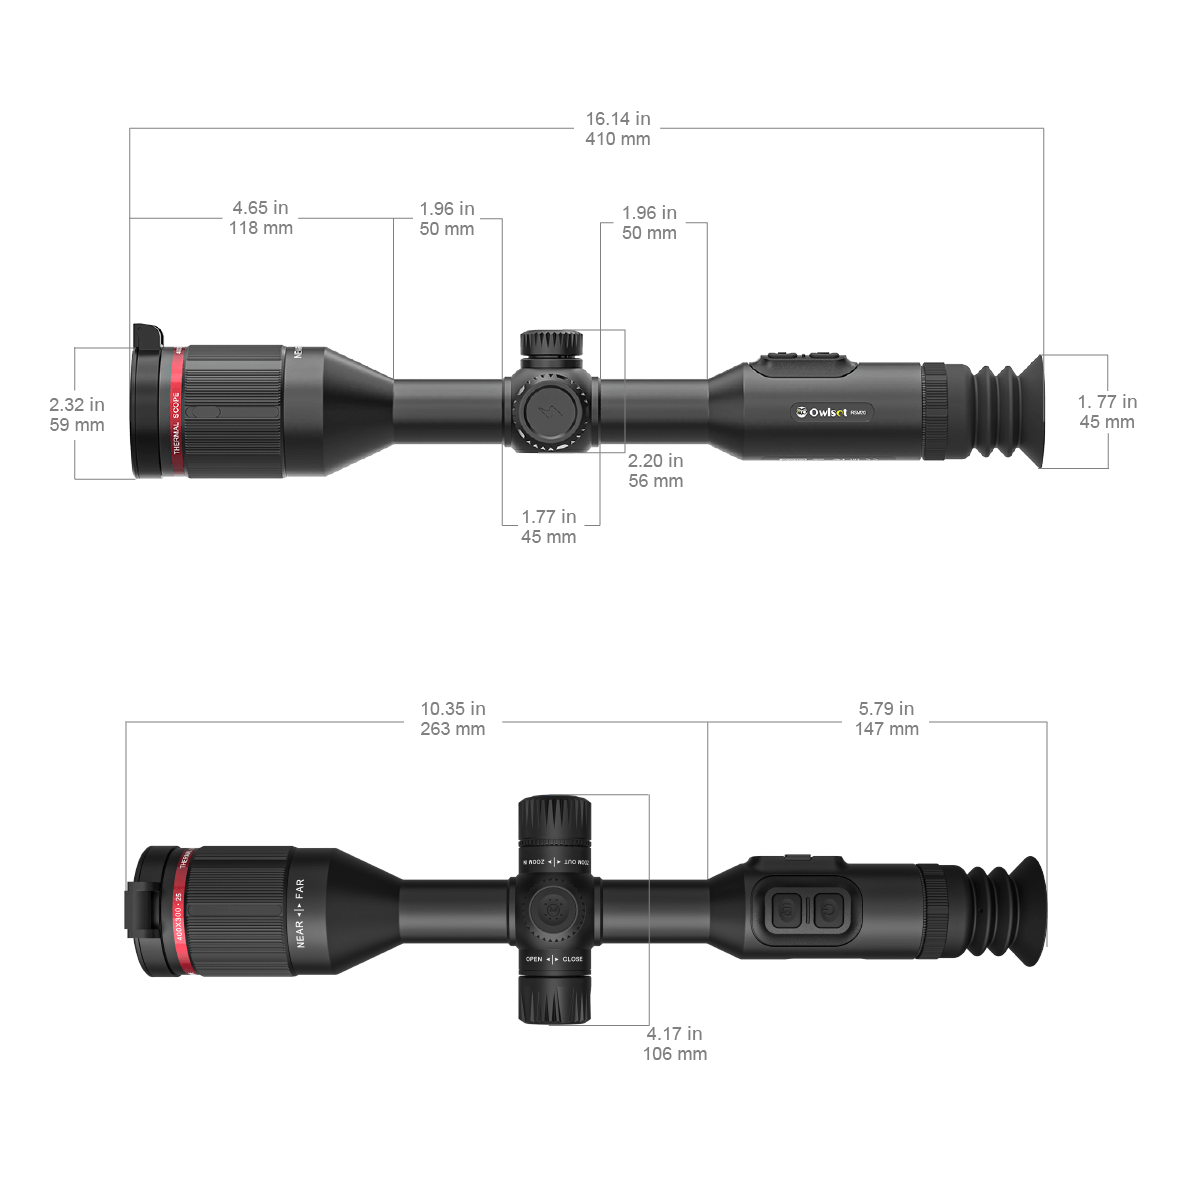 VEOT-RS02 RSM20 Riflescope Dimensions